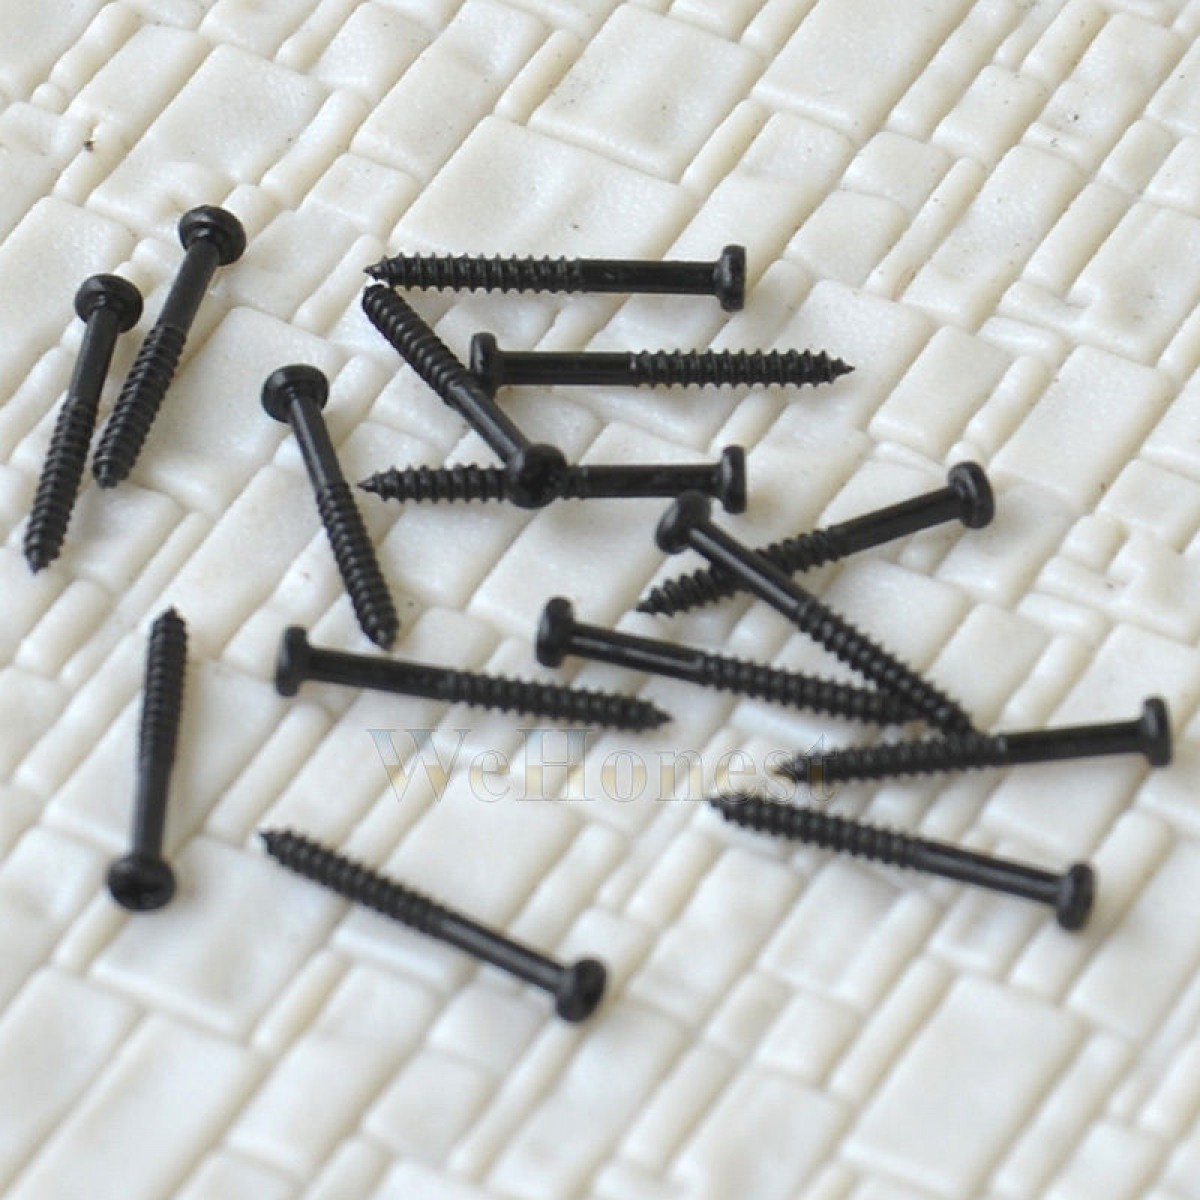 300  x  1.4mm x 12mm miniature Self Tapping Track Screws Mini Tiny Black Screws